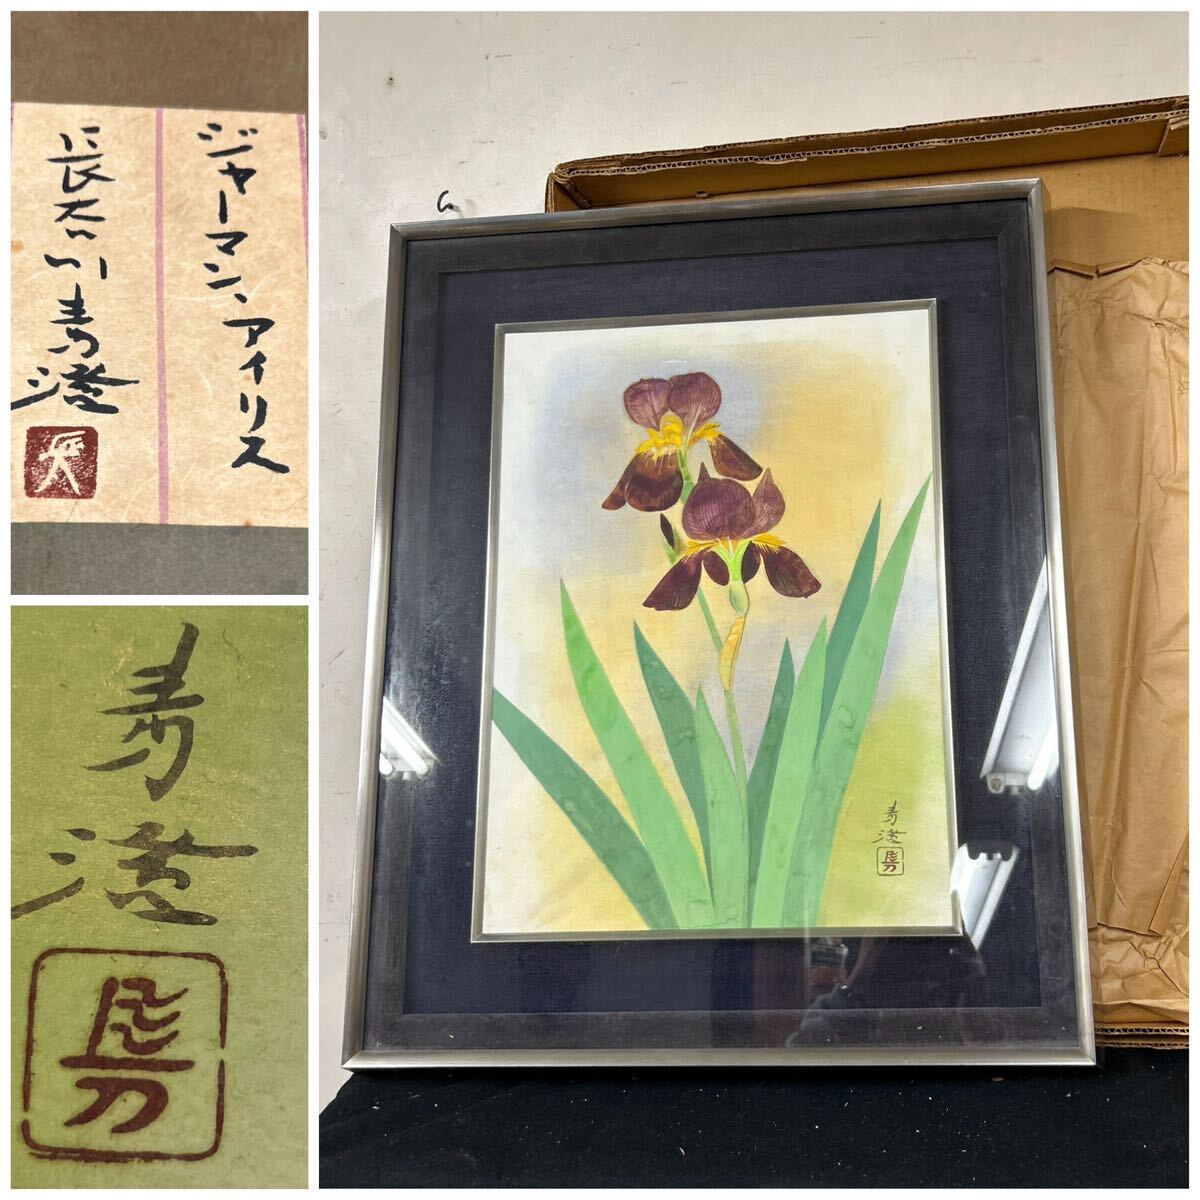 [Trabajo auténtico] Seisumi Hasegawa Alemán Iris Marco de metal Flor Flor Pintura japonesa Pintura Sello enmarcado, cuadro, acuarela, pintura de naturaleza muerta